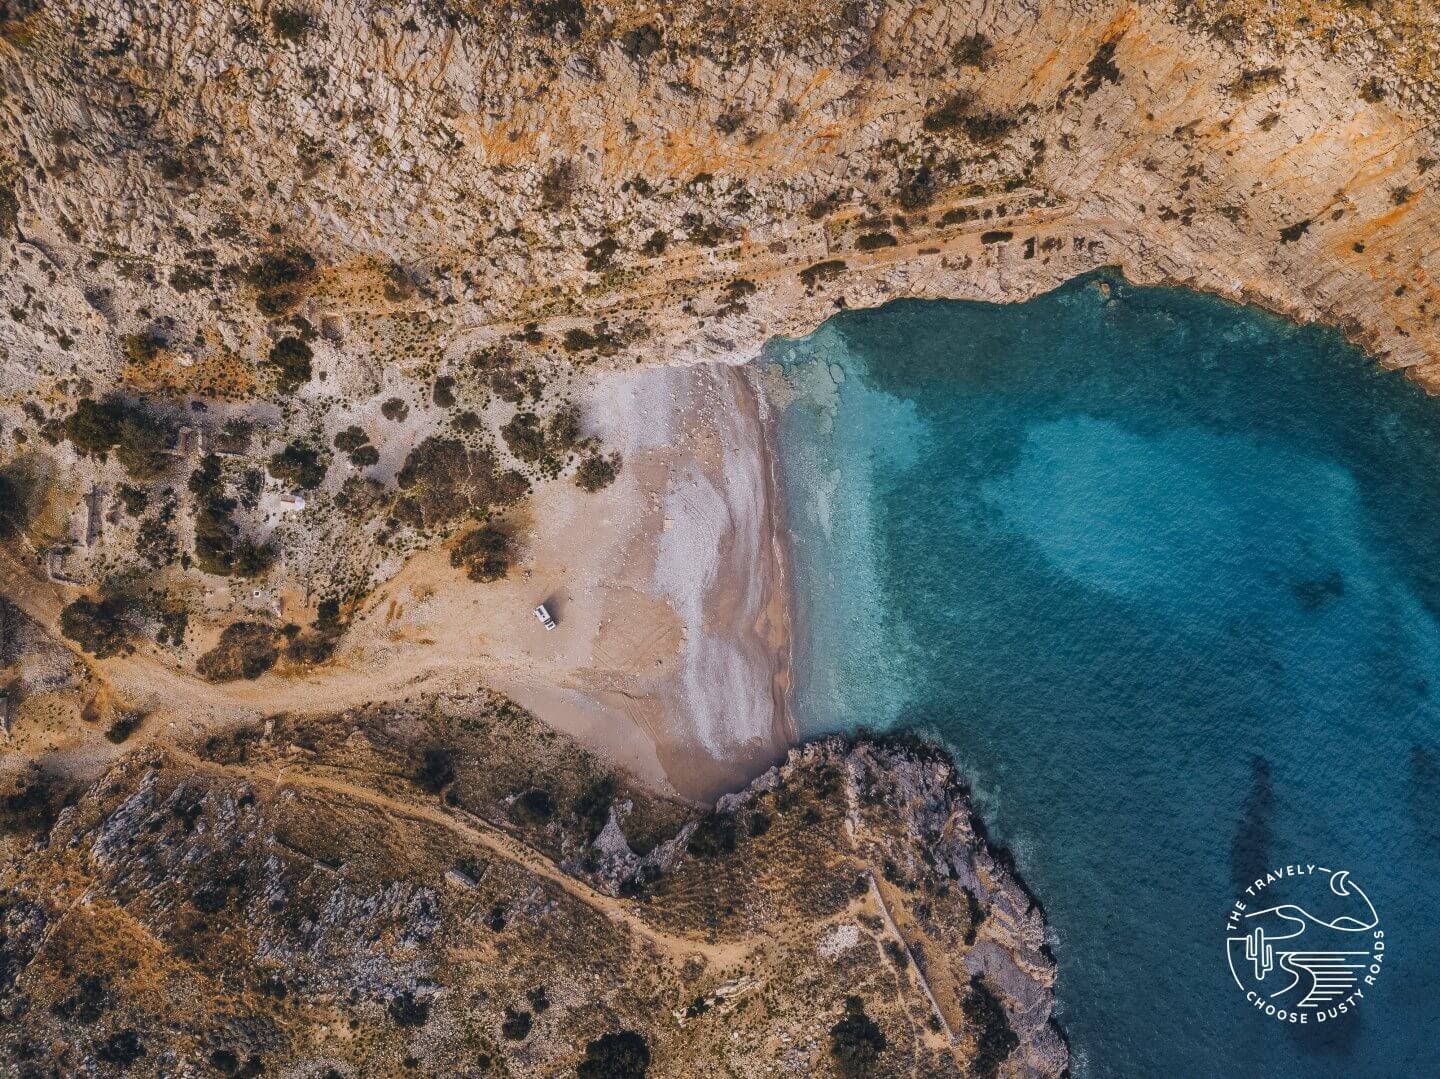 Wer möchte, findet auf Kreta eine Vielzahl an wundervollen Freistehplätzen